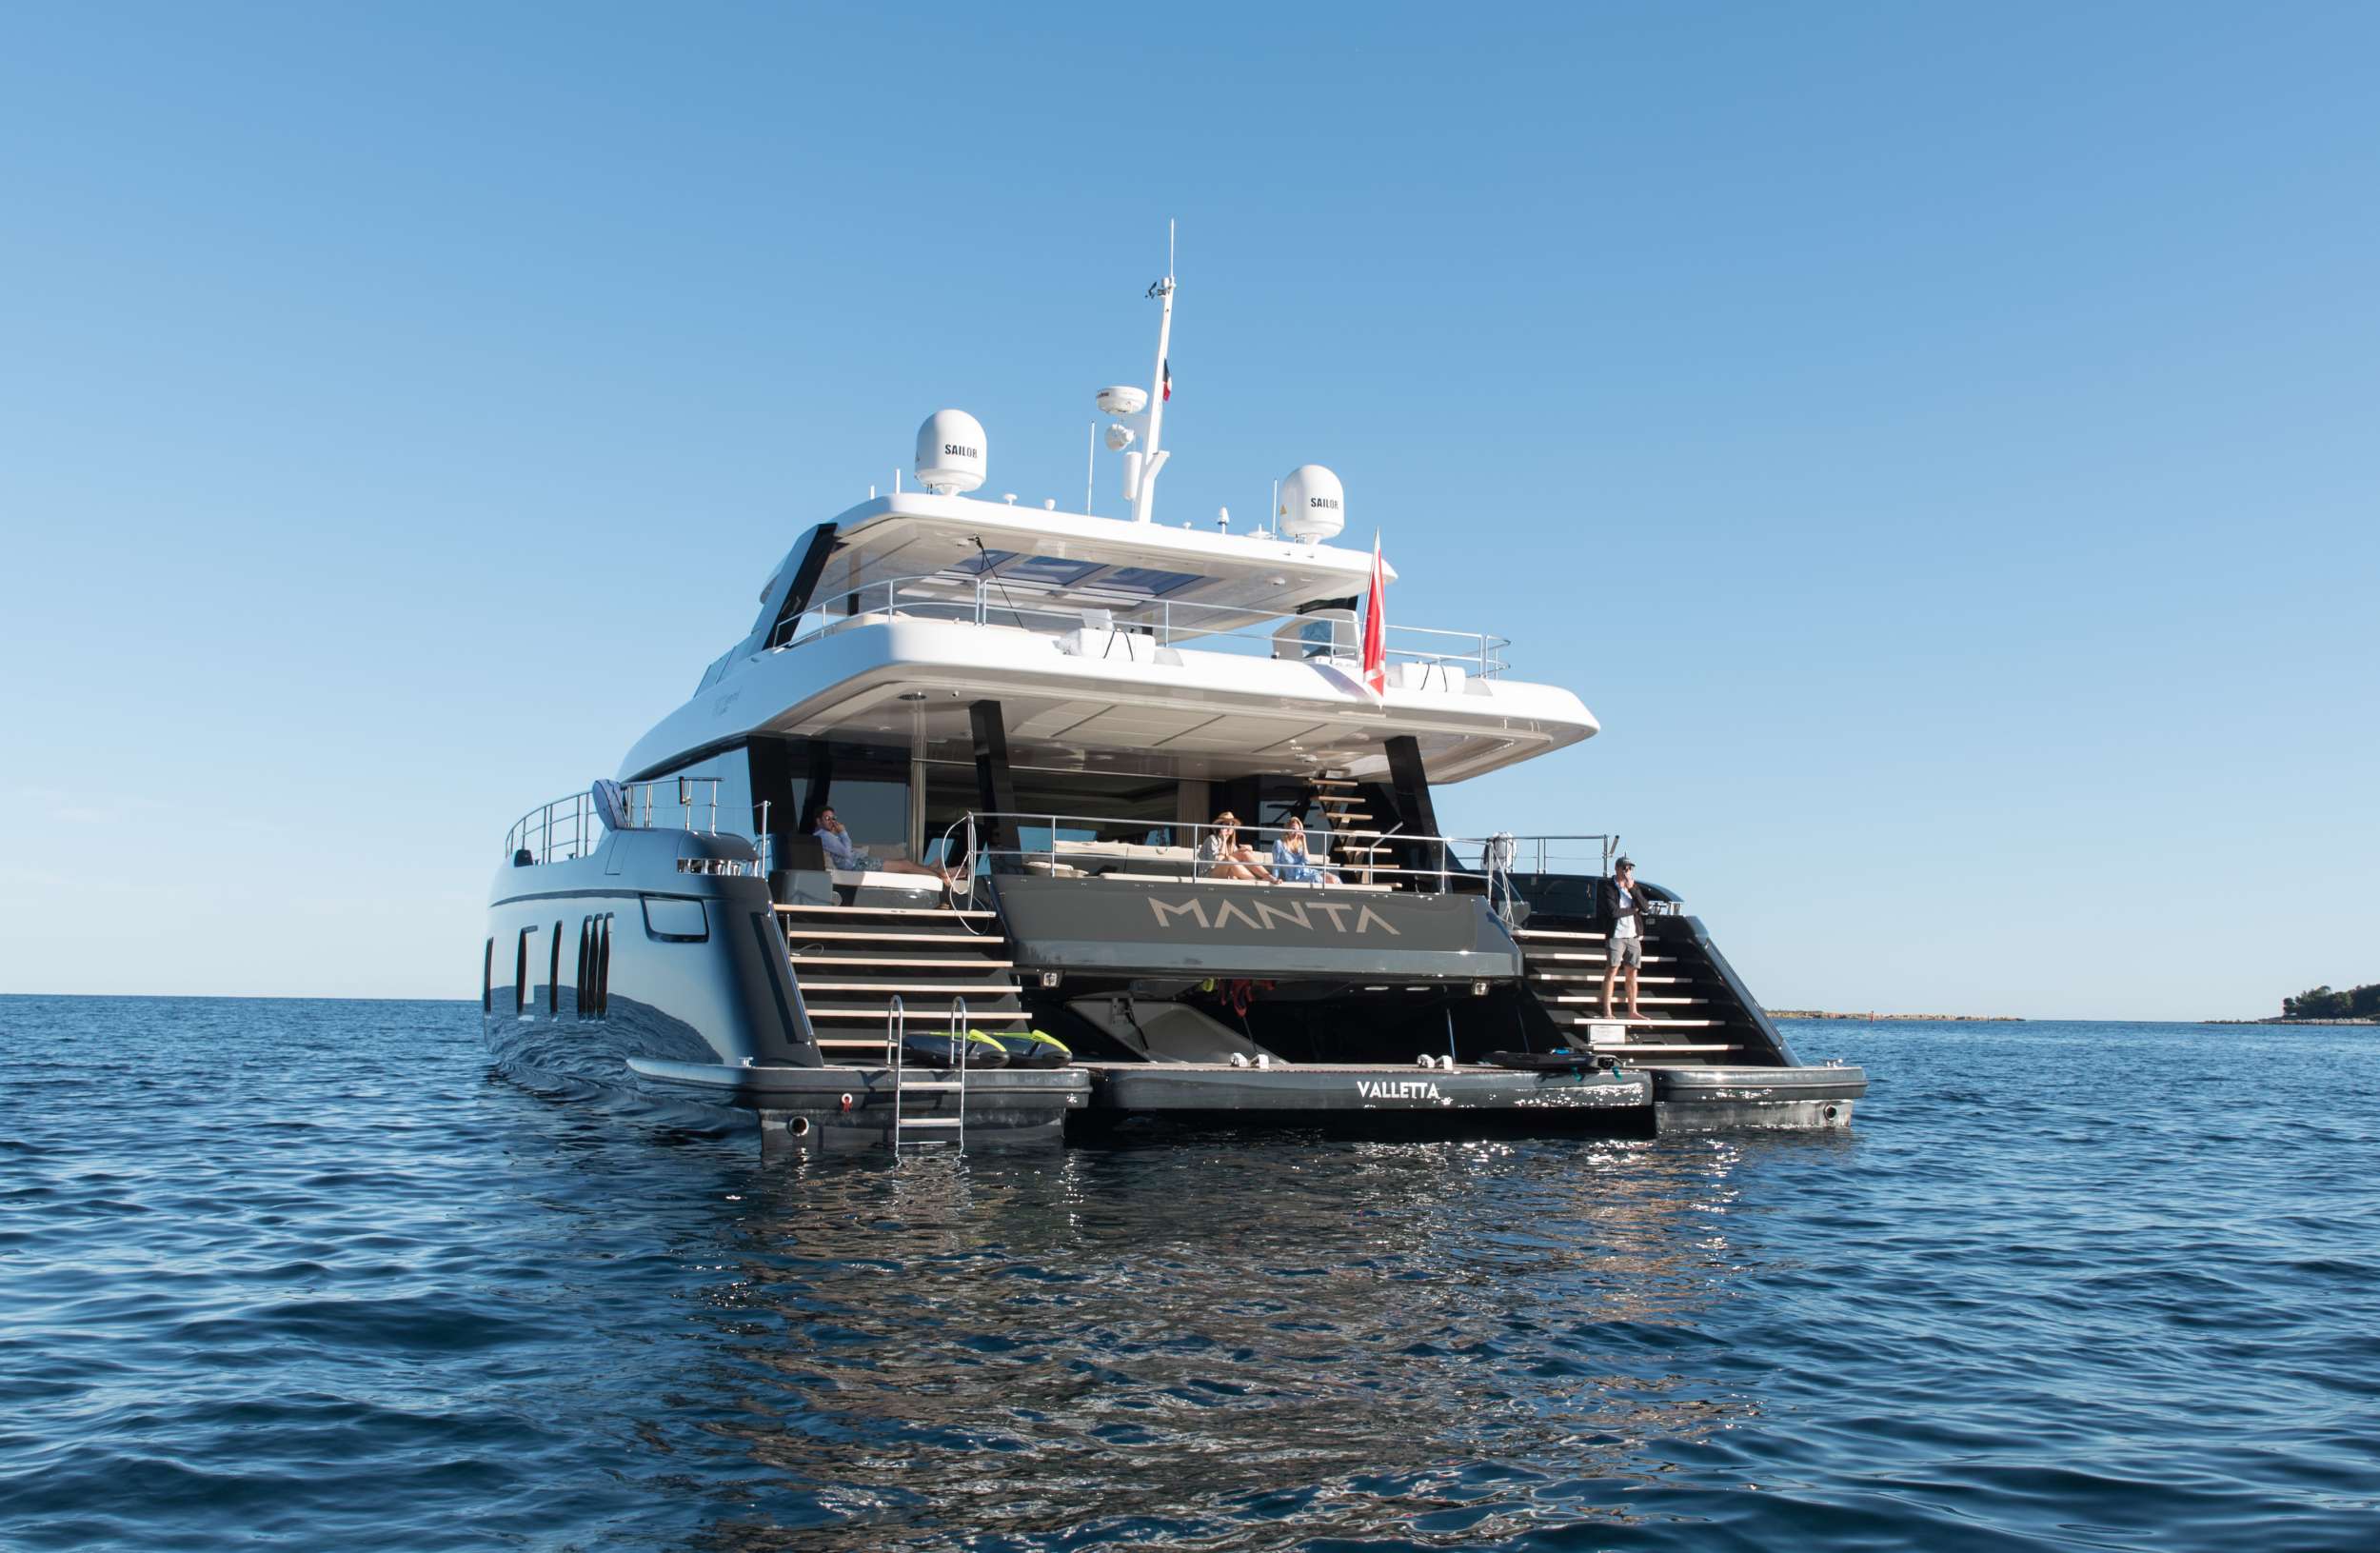 MANTA - Motor Boat Charter Spain & Boat hire in Riviera, Cors, Sard, Italy, Spain, Turkey, Croatia, Greece 1